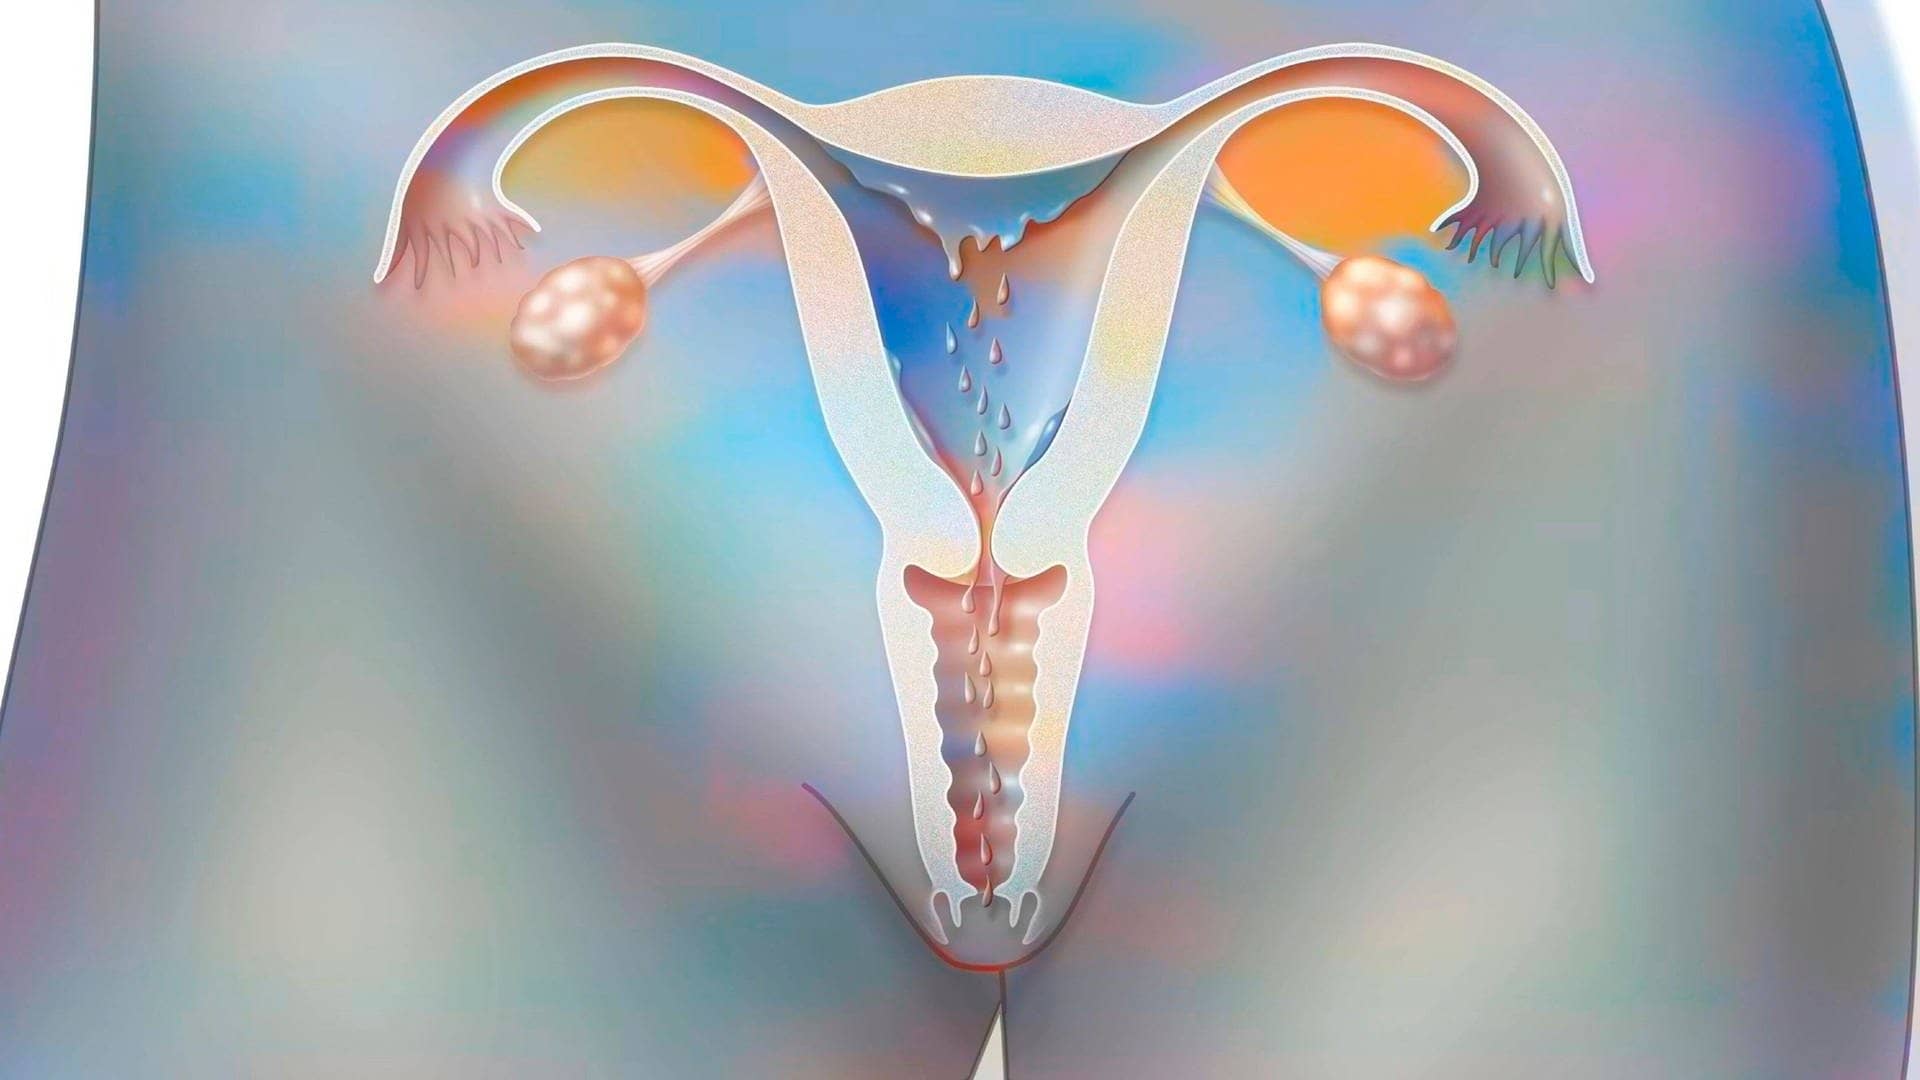 Modell einer Gebärmutter während der Periode.